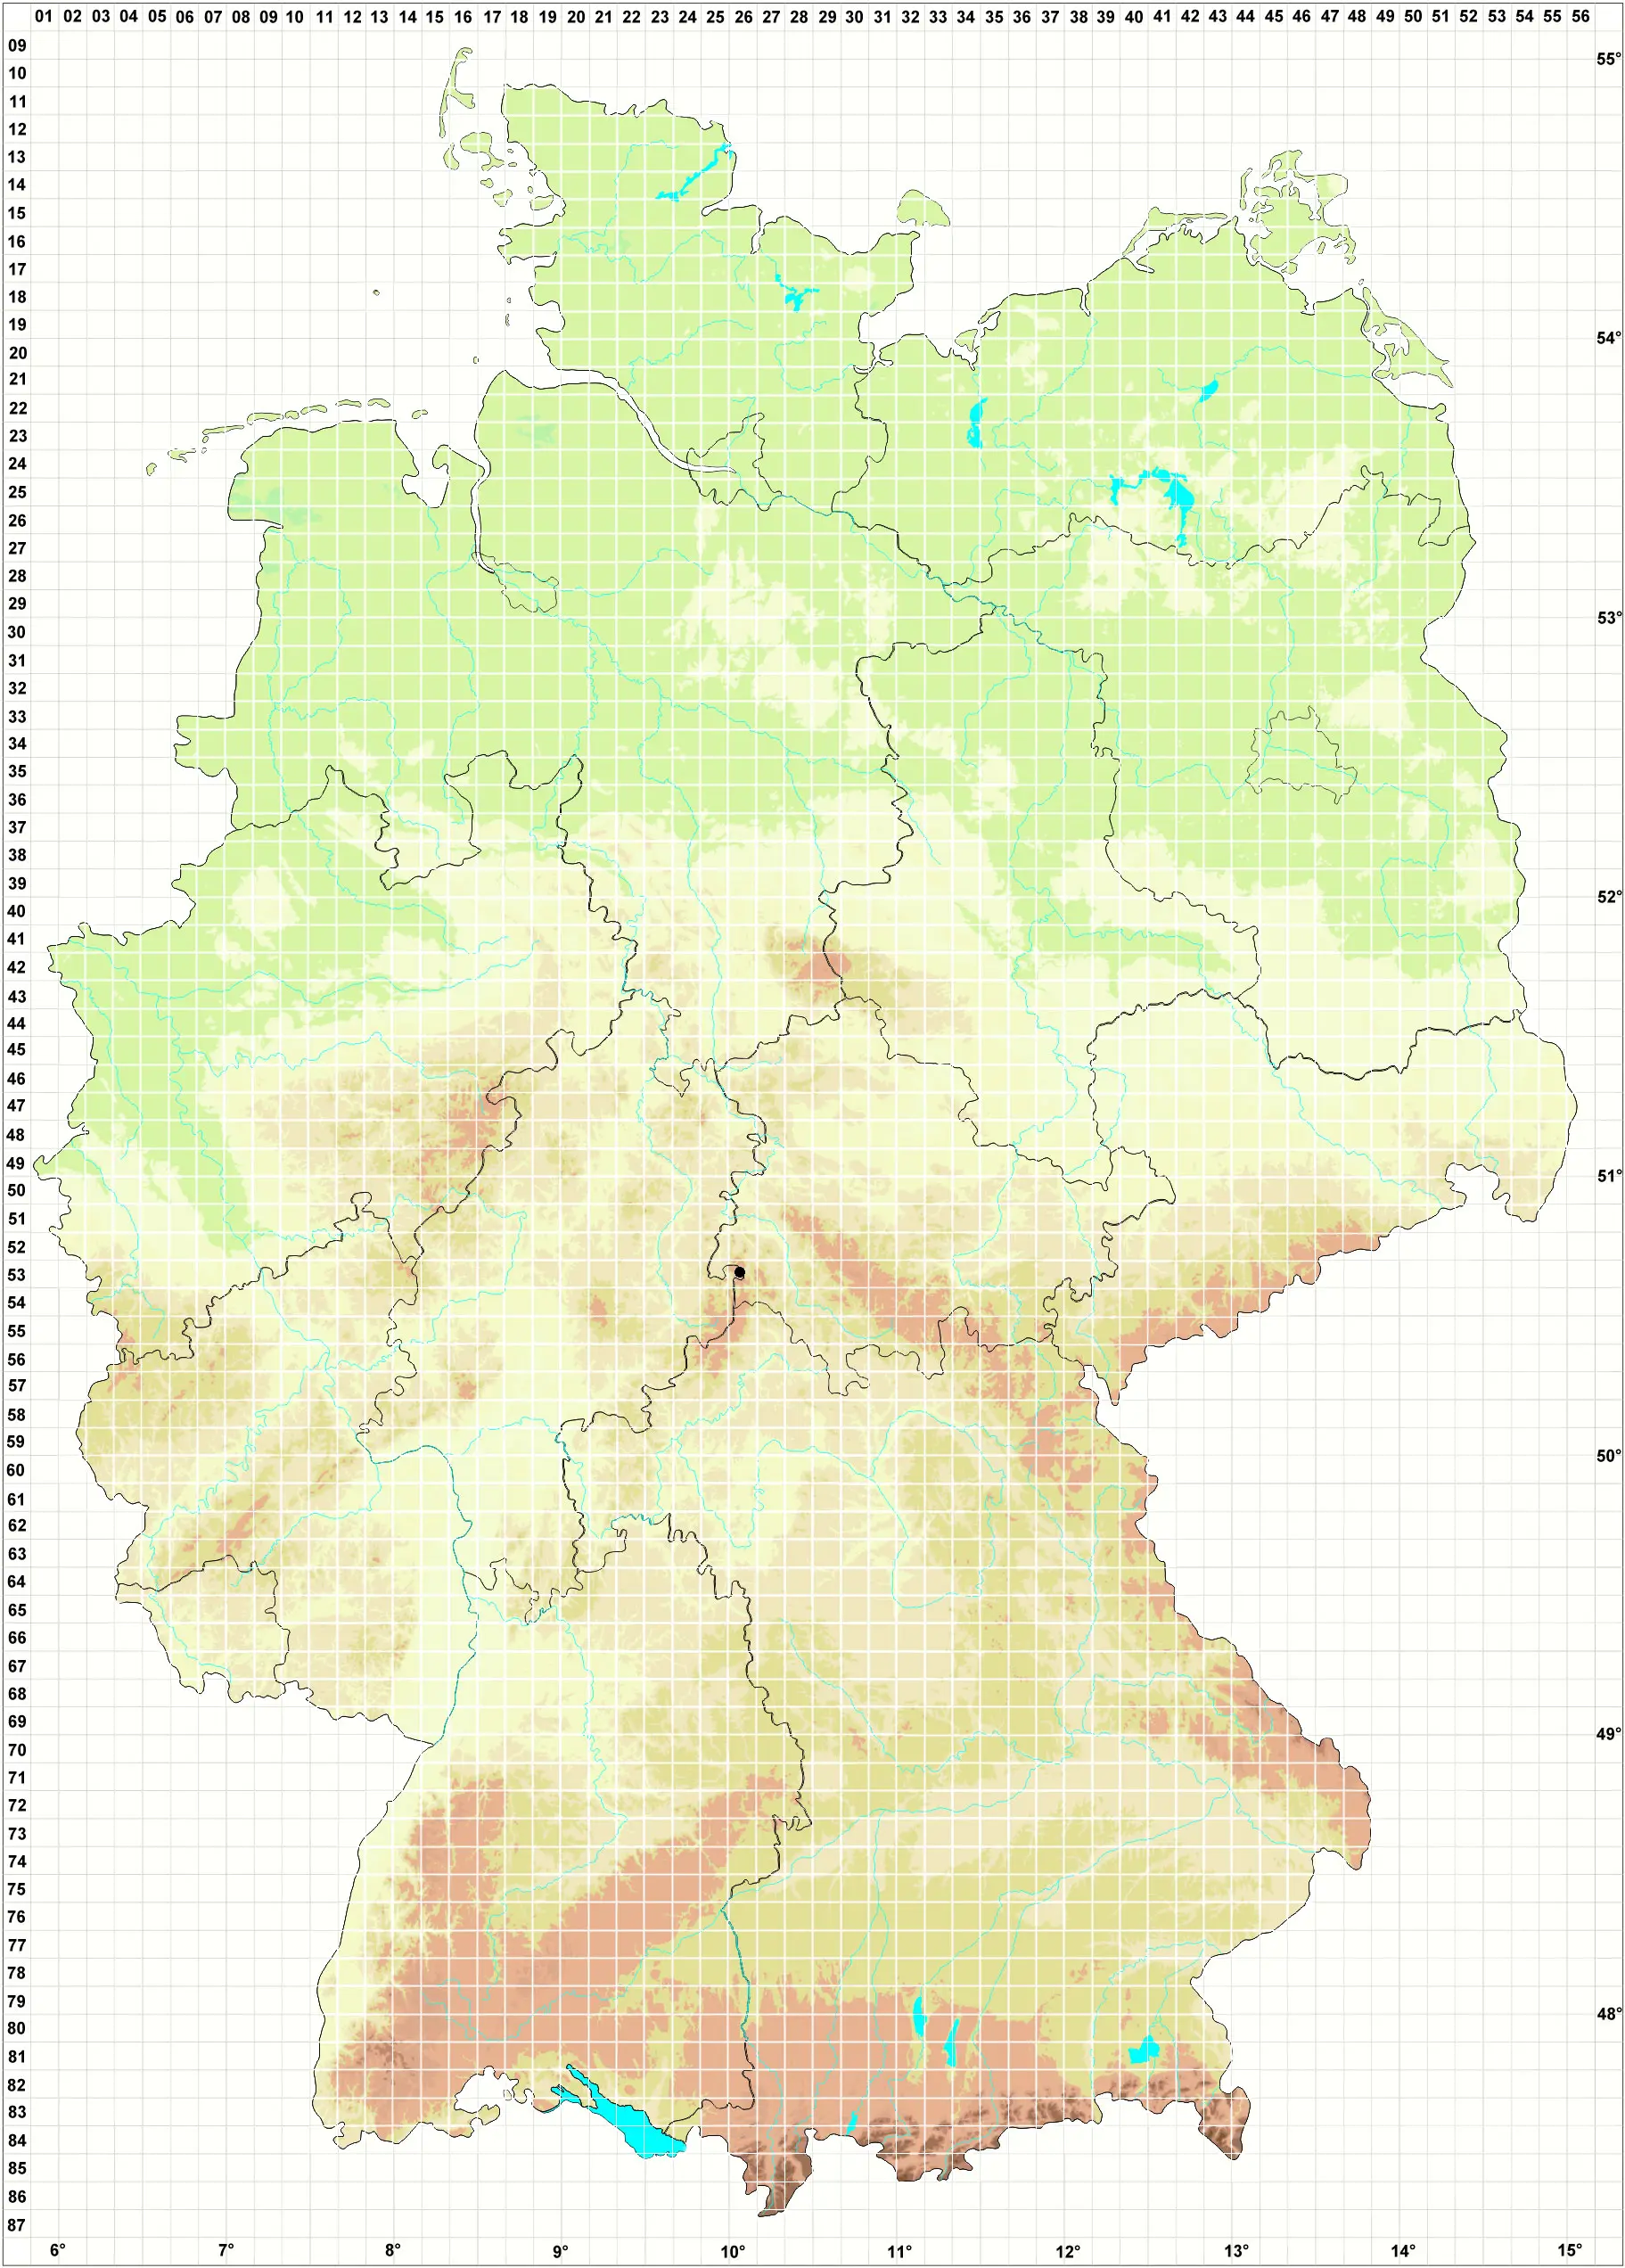 Karte H. Grünberg 17.04.2014